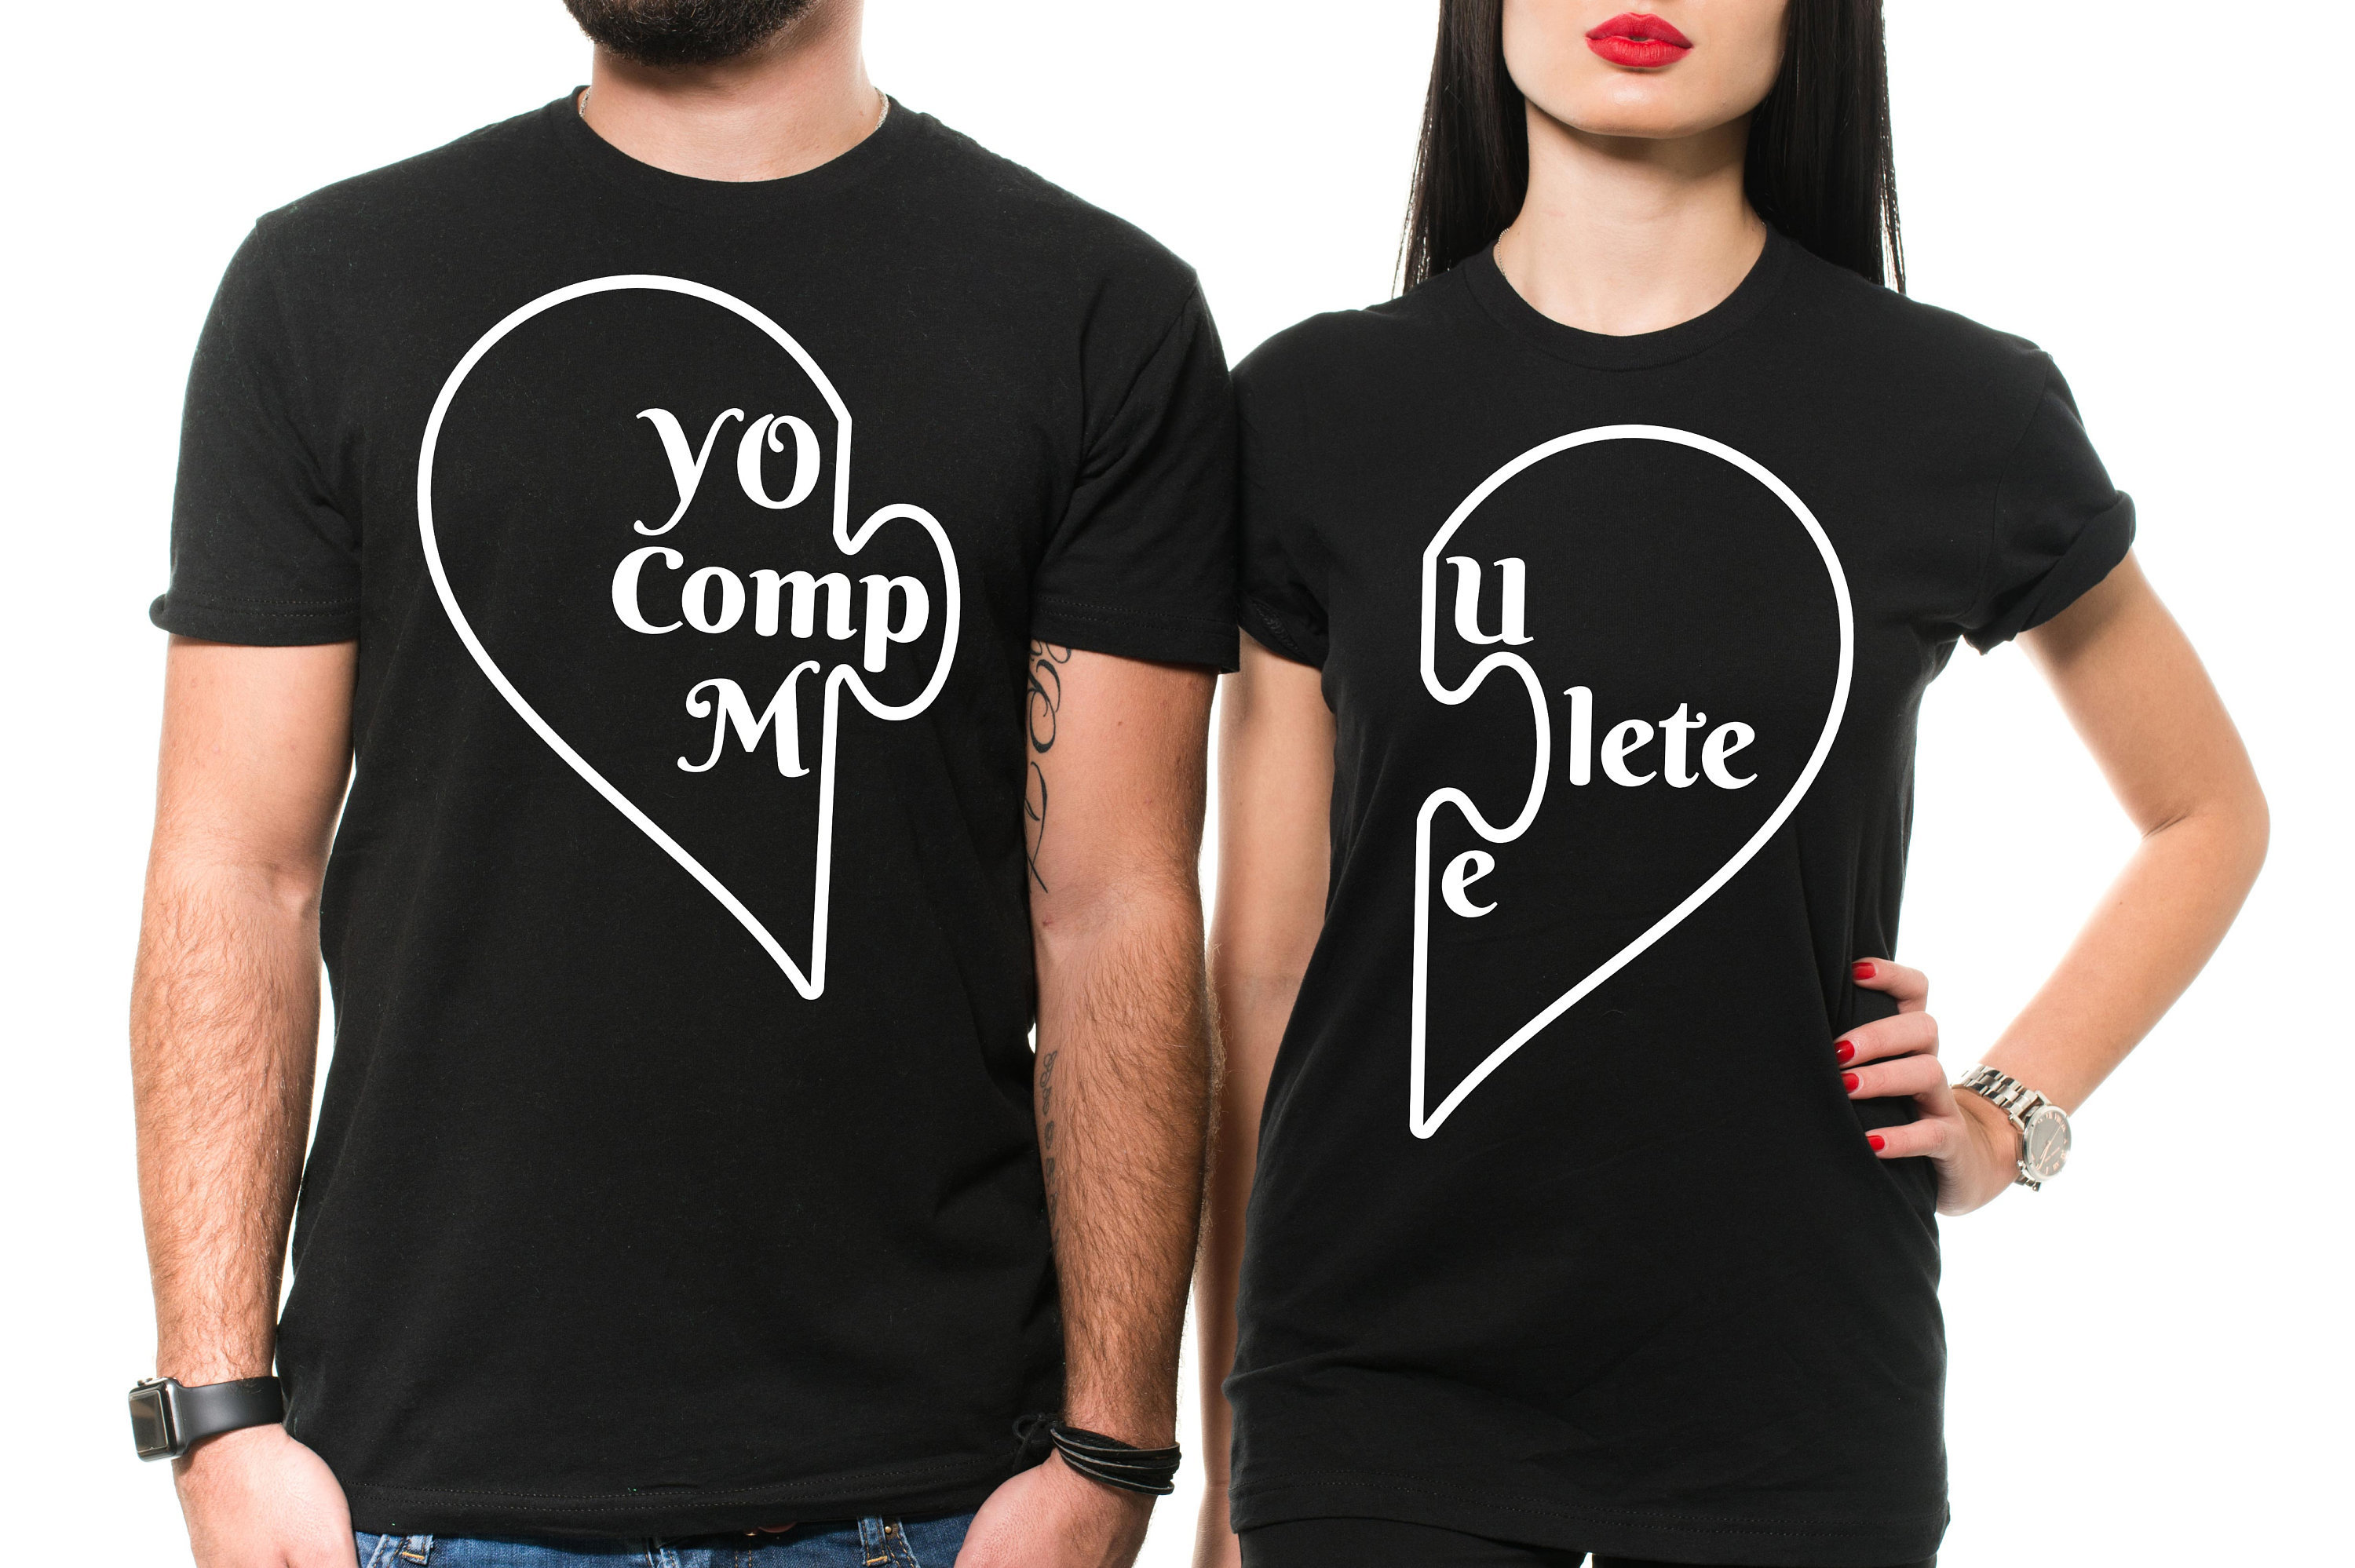 T-shirt Personnalisé - Ta Présence Est Déjà Un Cadeau, t shirt couple,  cadeau anniversaire couple, cadeau couple - TESCADEAUX